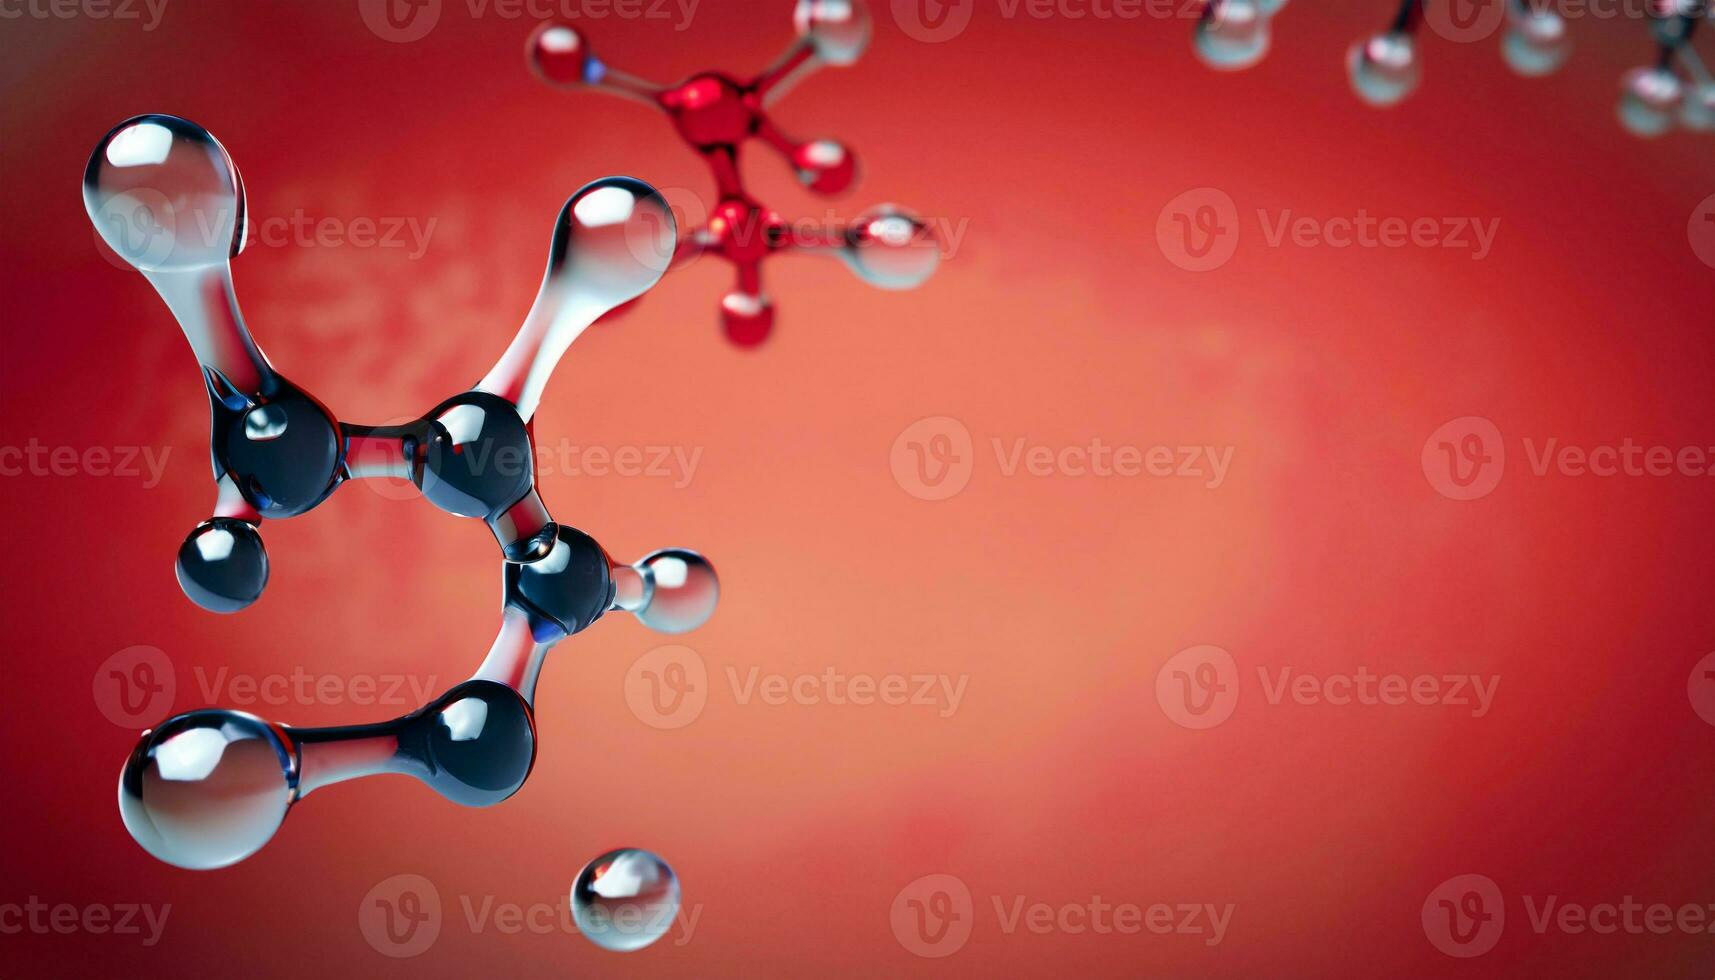 Wissenschaft Hintergrund mit molekulare und Atom Modell. abstrakt molekular Struktur. foto